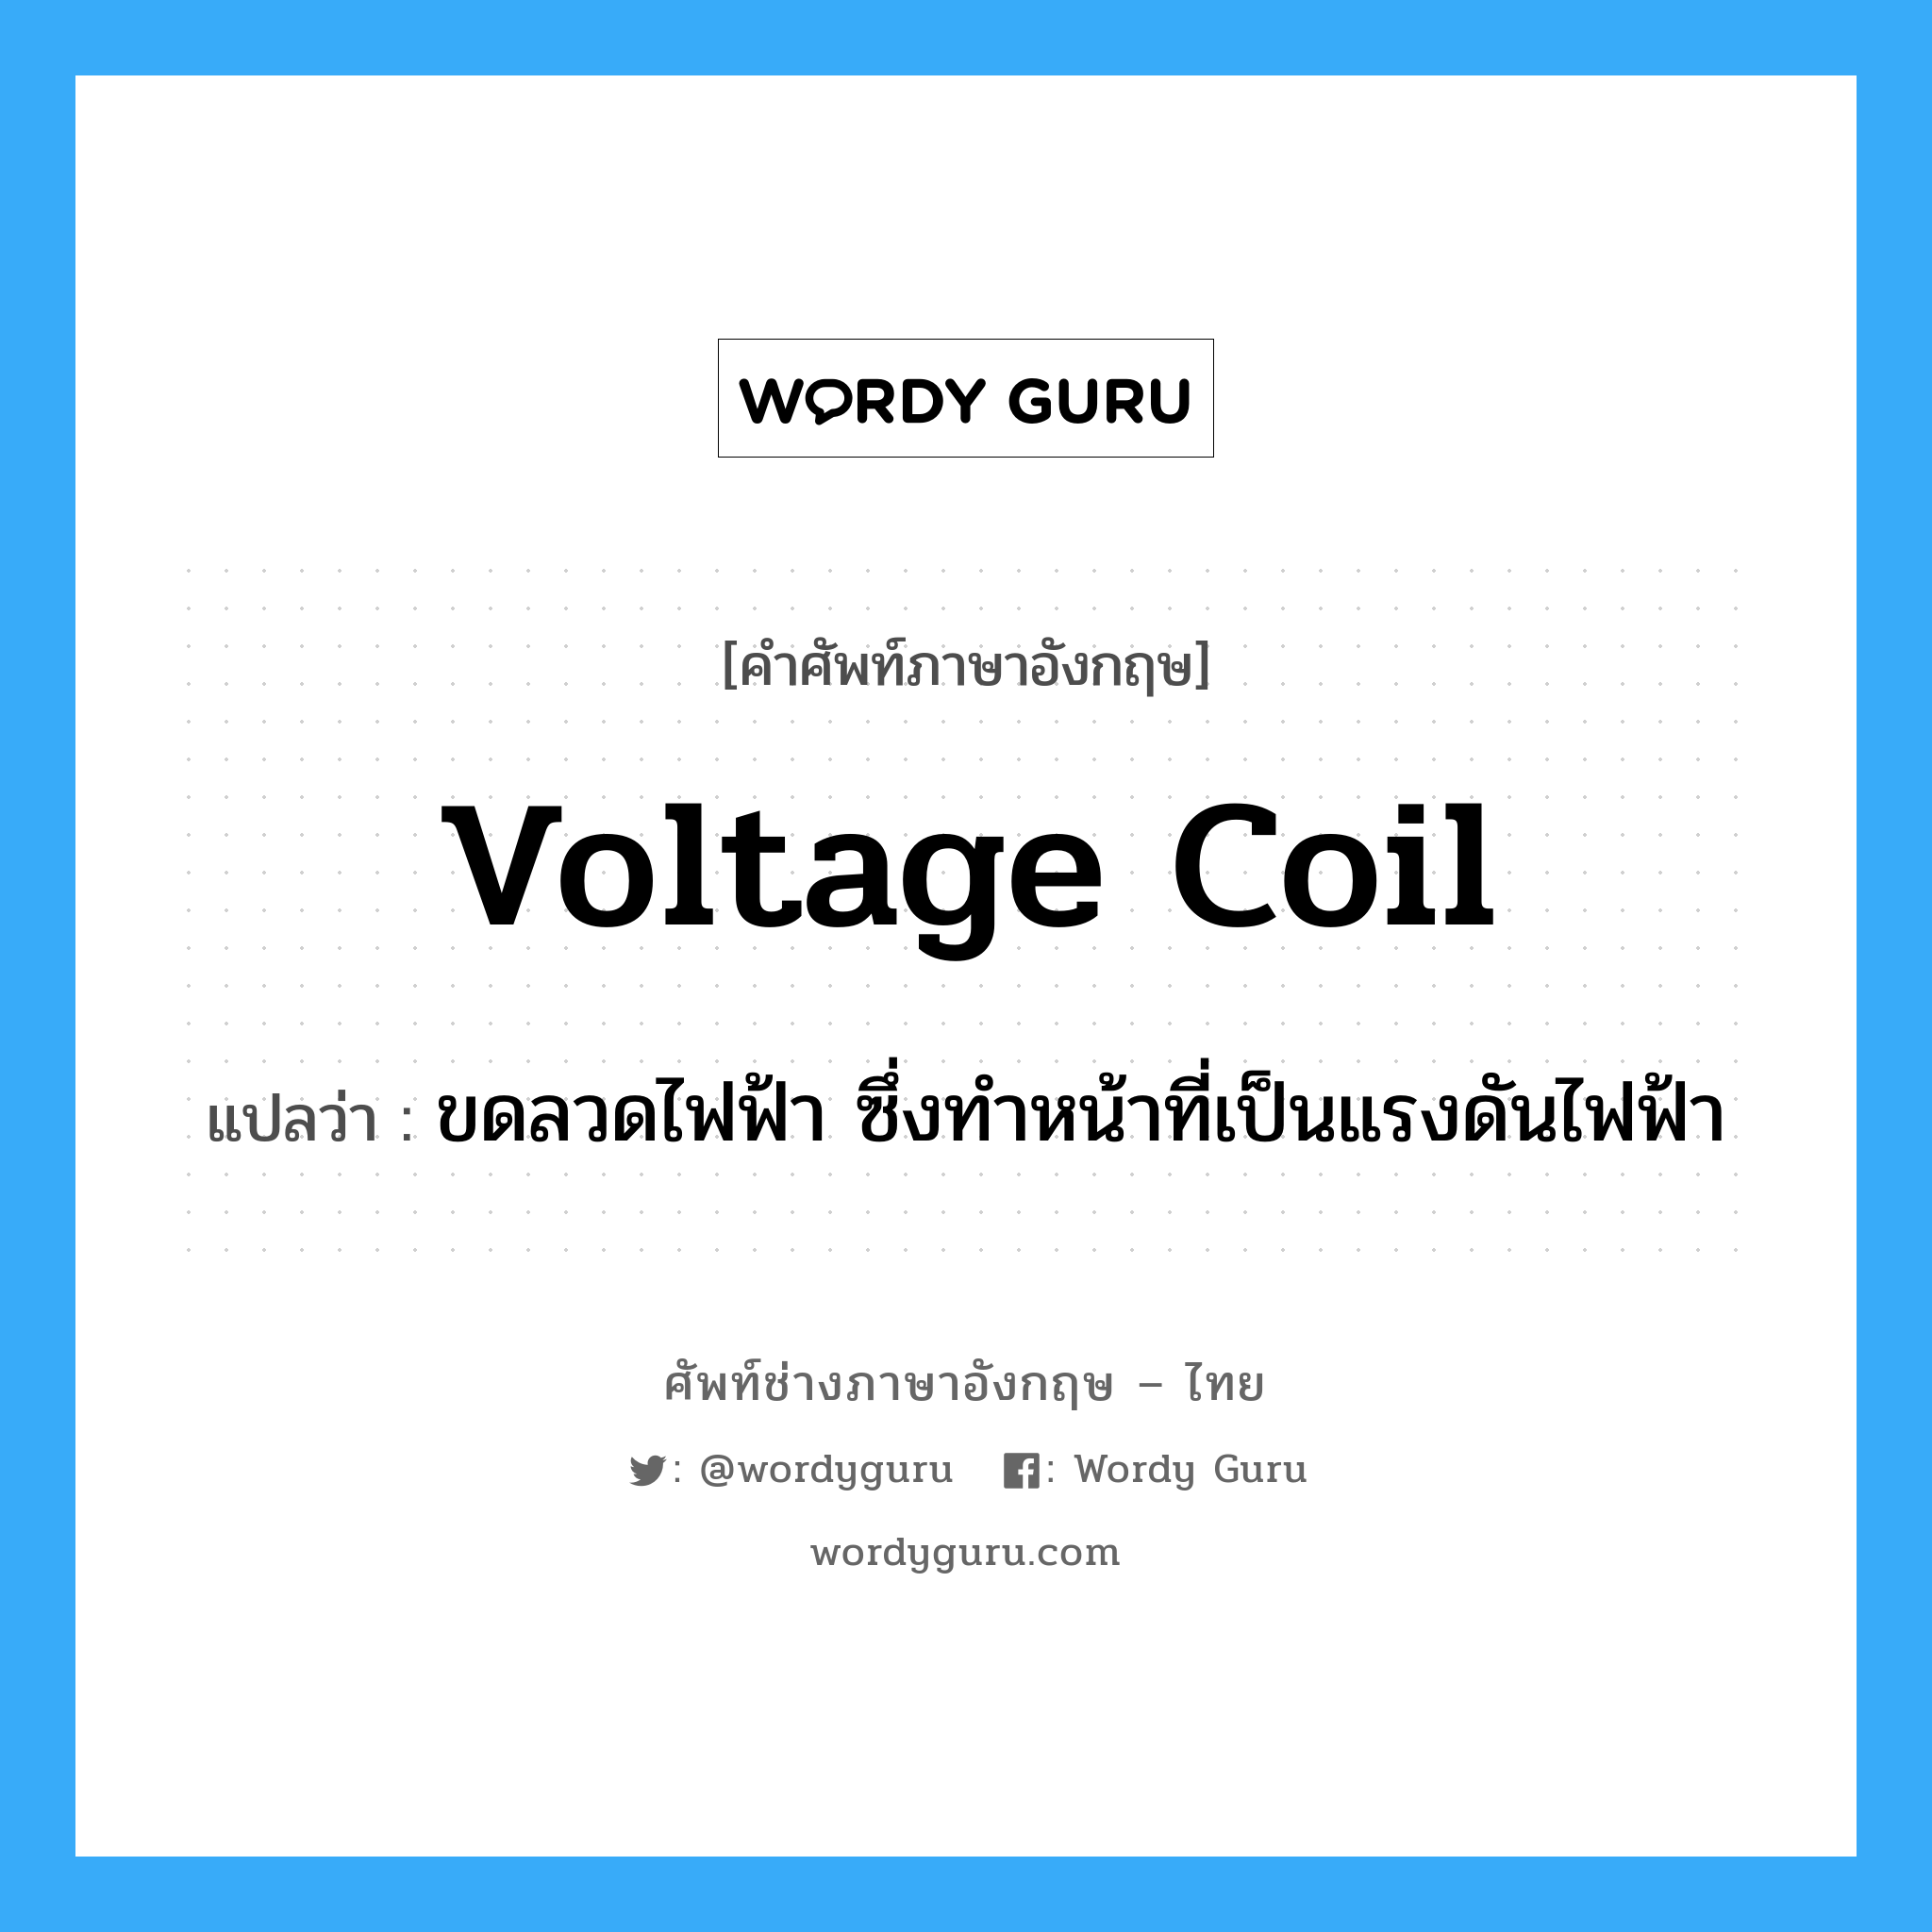 voltage coil แปลว่า?, คำศัพท์ช่างภาษาอังกฤษ - ไทย voltage coil คำศัพท์ภาษาอังกฤษ voltage coil แปลว่า ขดลวดไฟฟ้า ซึ่งทำหน้าที่เป็นแรงดันไฟฟ้า